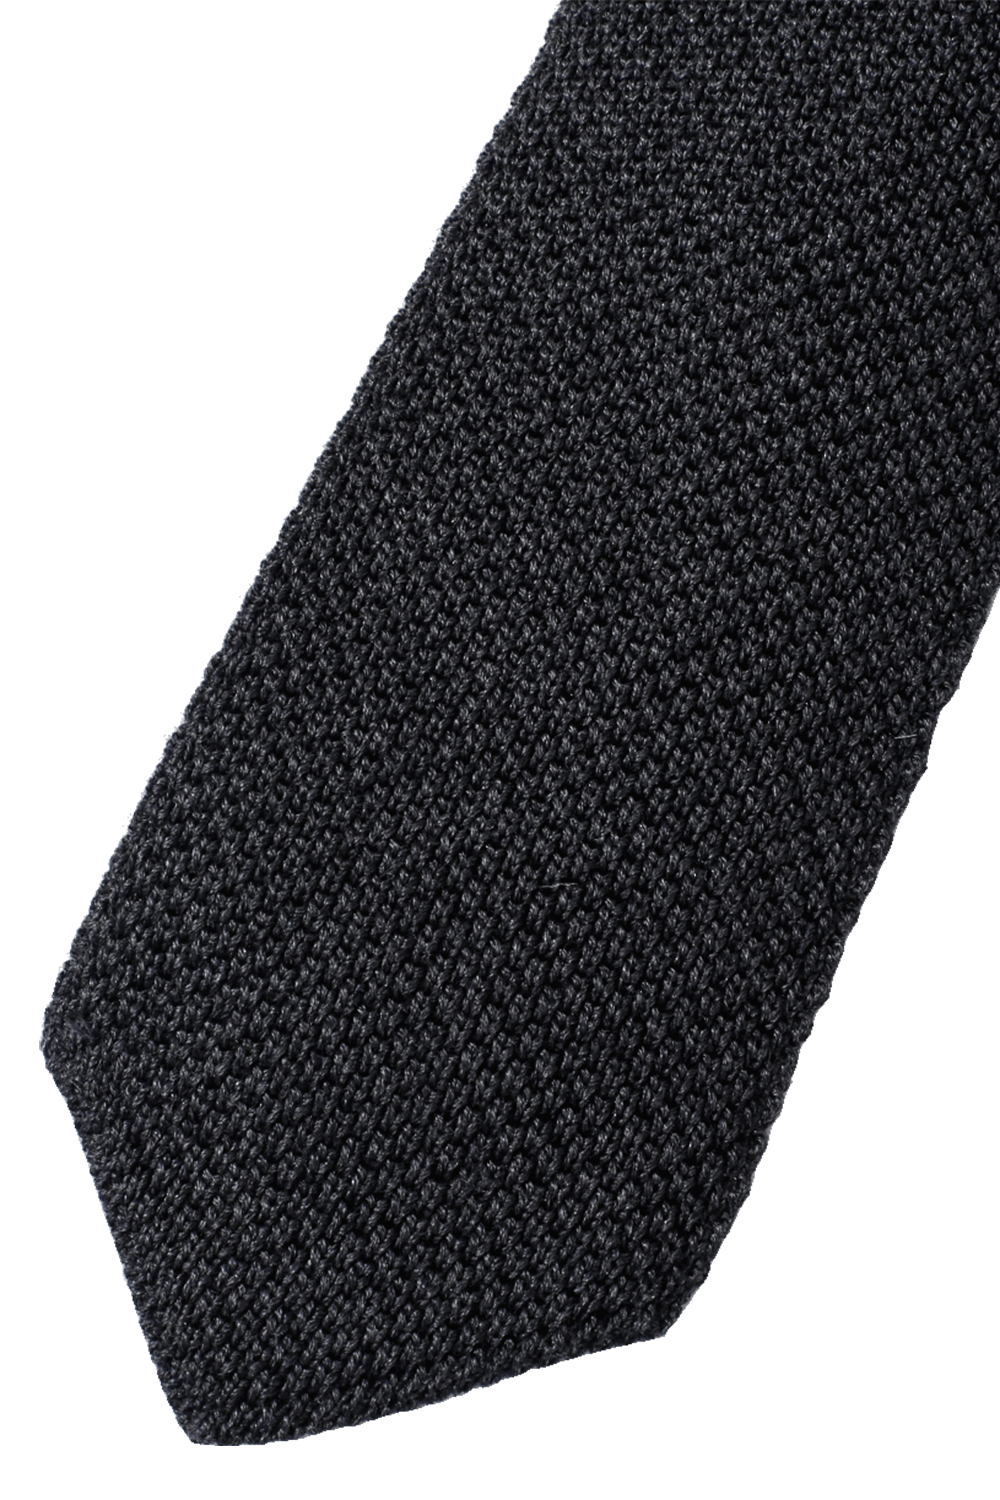 BRUNELLO CUCINELLI-Knit Tie-DARK GREY